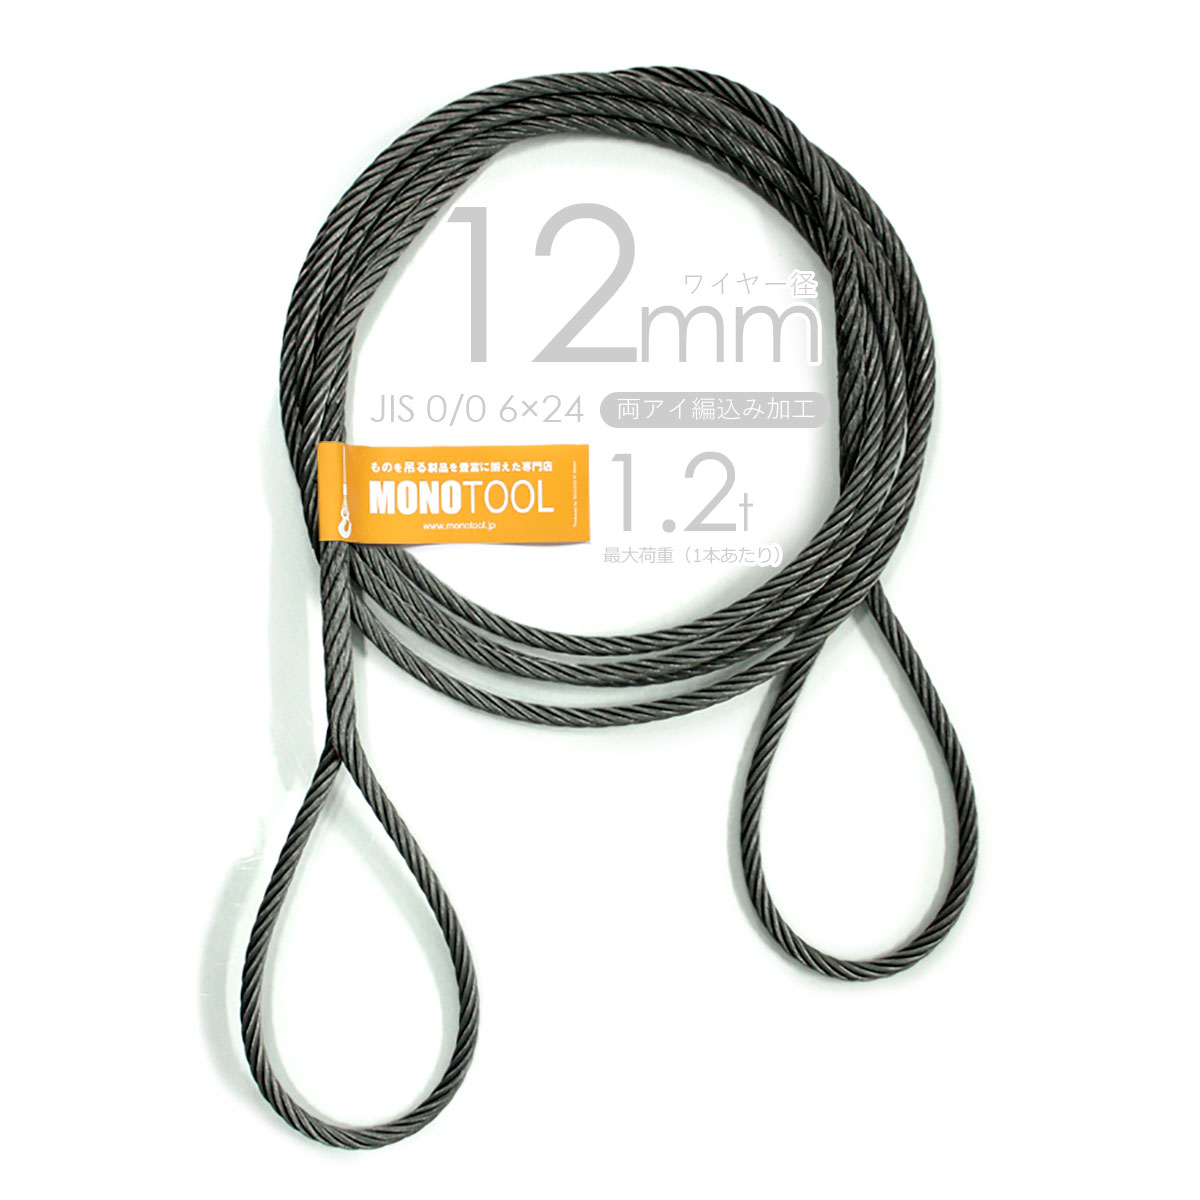 編み込み・フレミッシュ加工 JIS黒(O/O) 12mm(4分) 玉掛ワイヤロープ 2